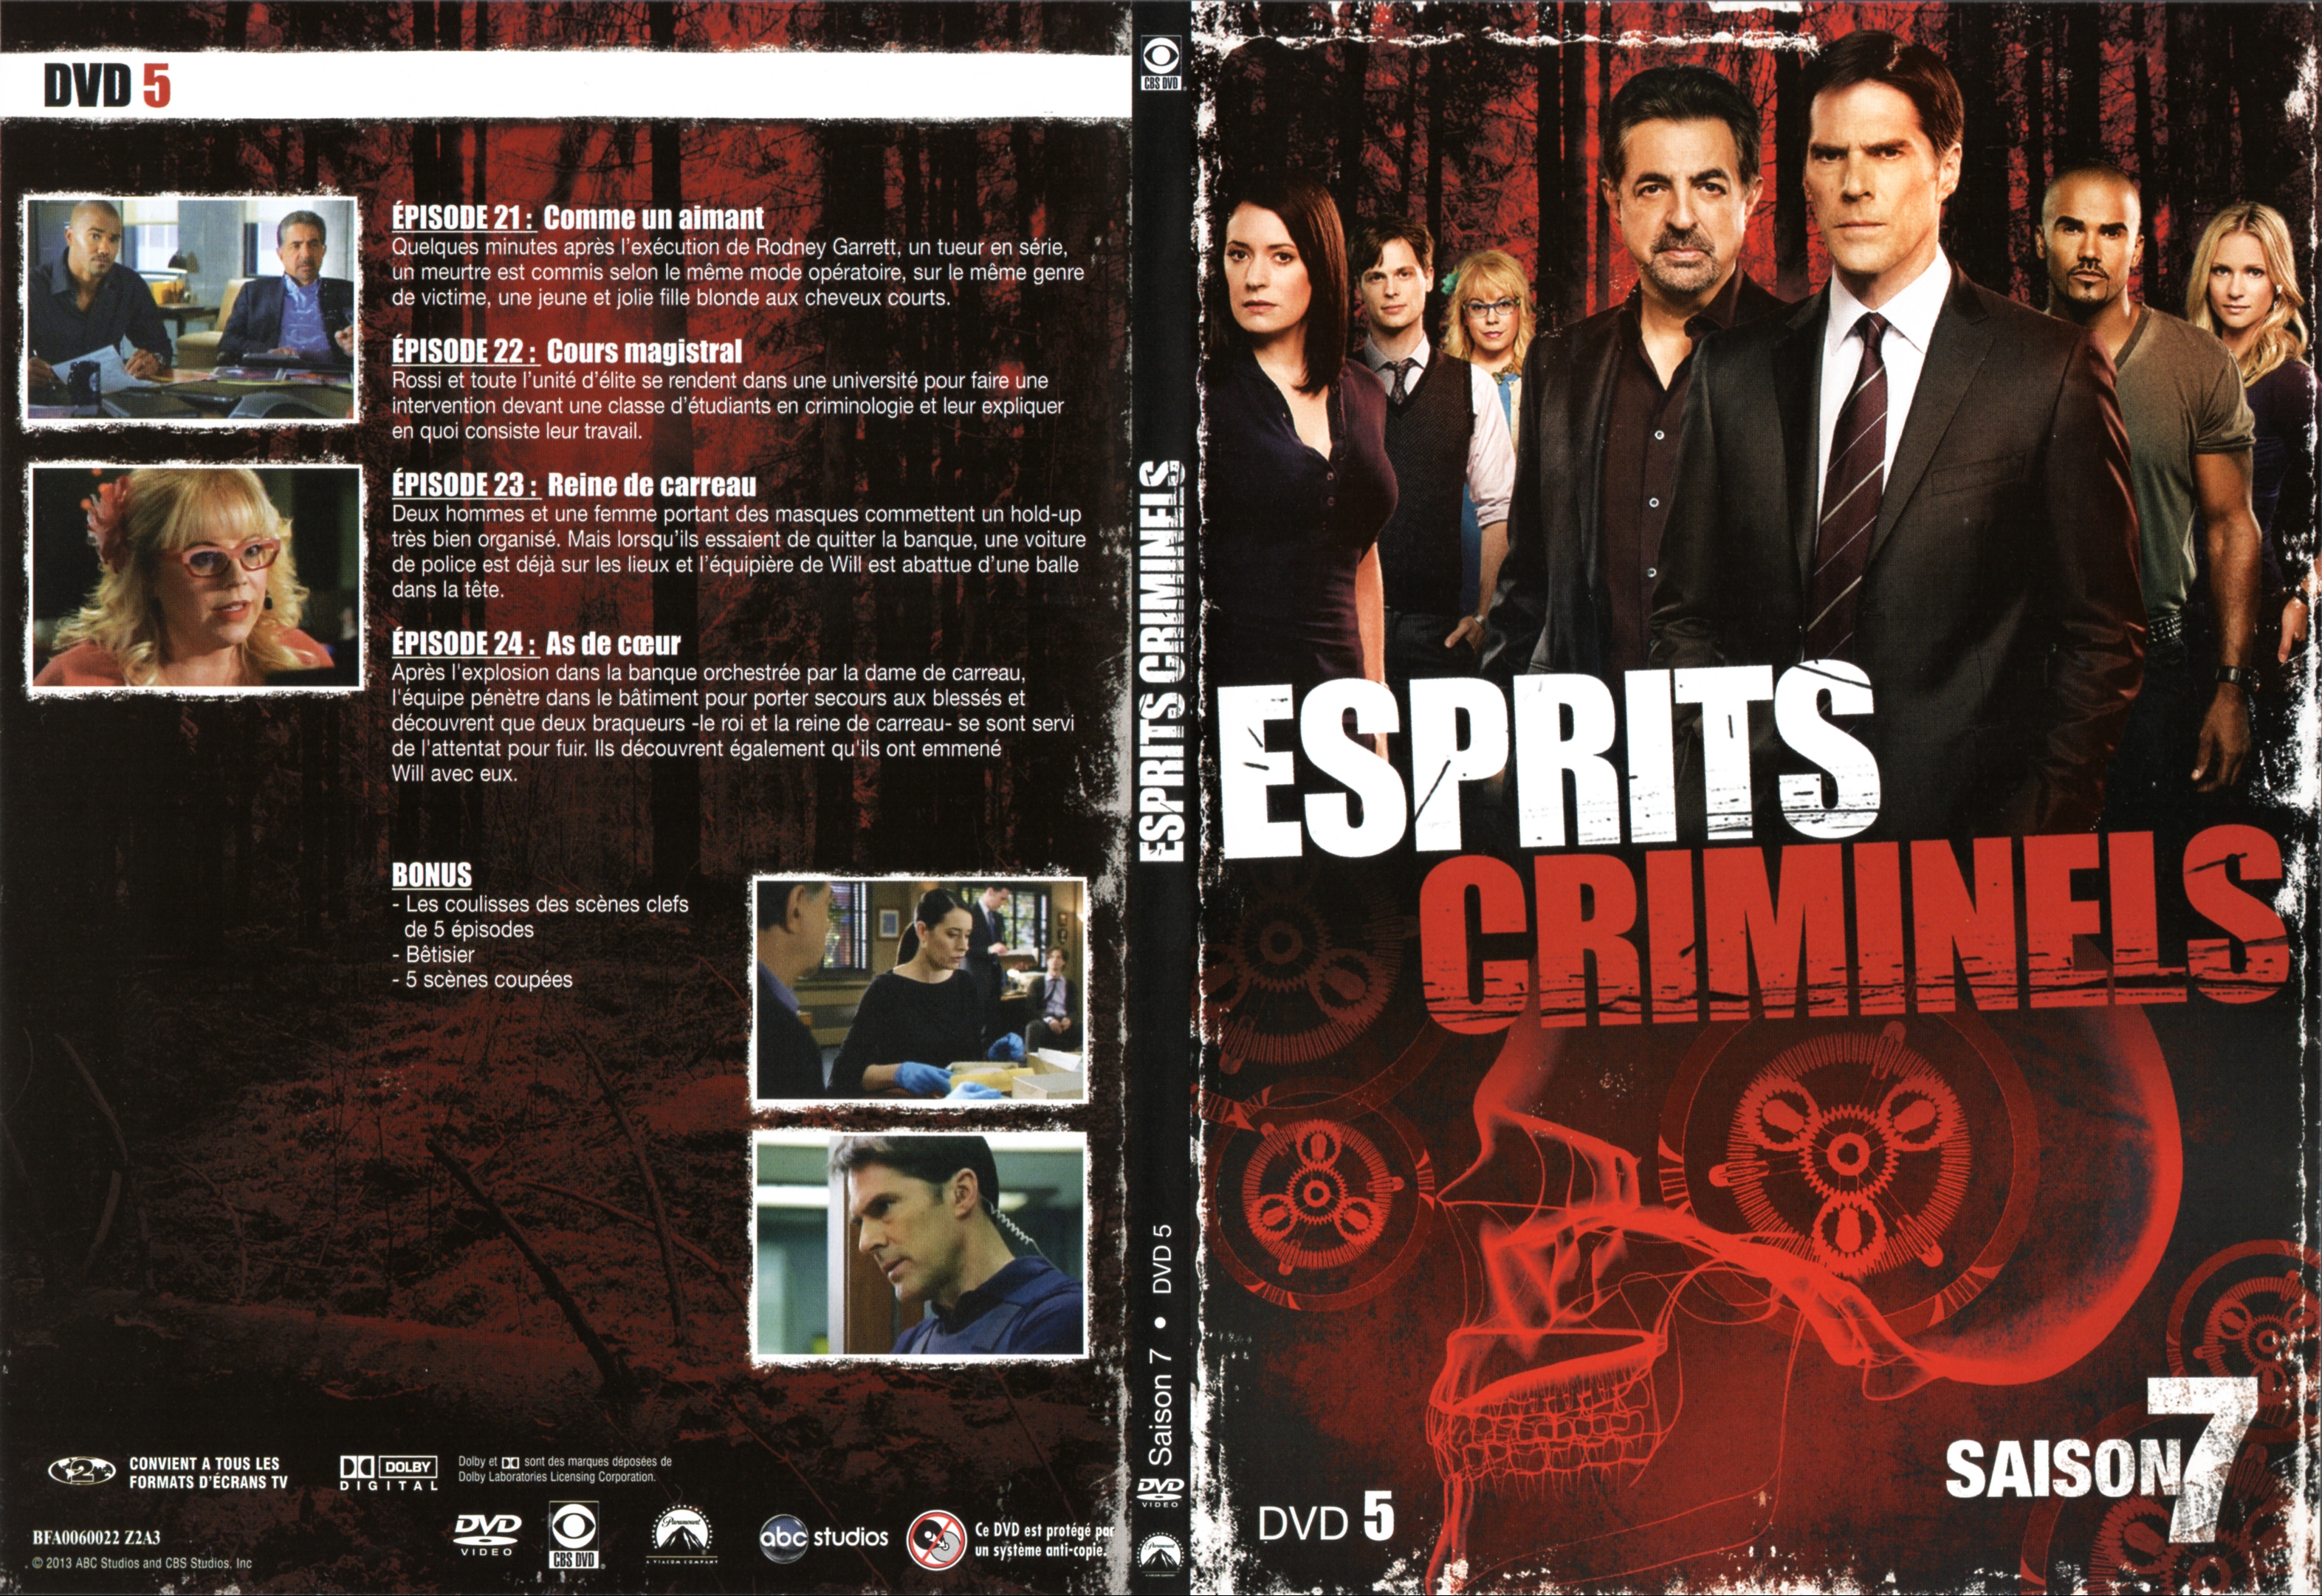 Jaquette DVD Esprits criminels Saison 7 DVD 3